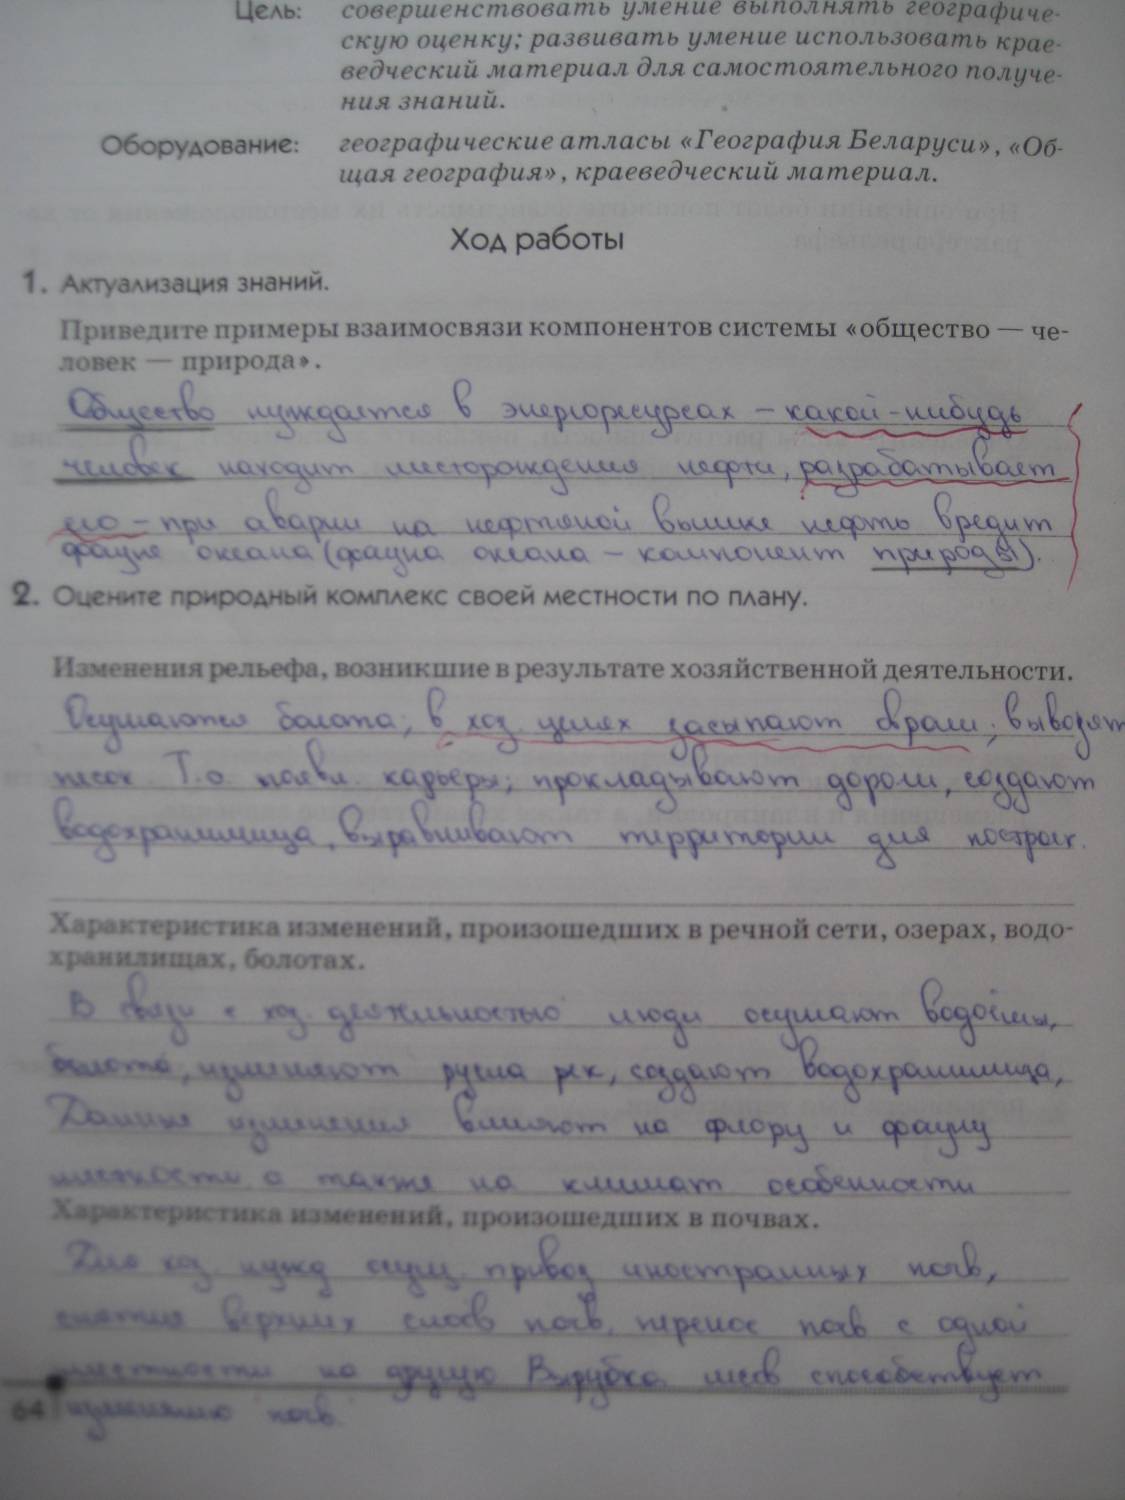 Resheba.ru по географии 9 класс практическая работа номер